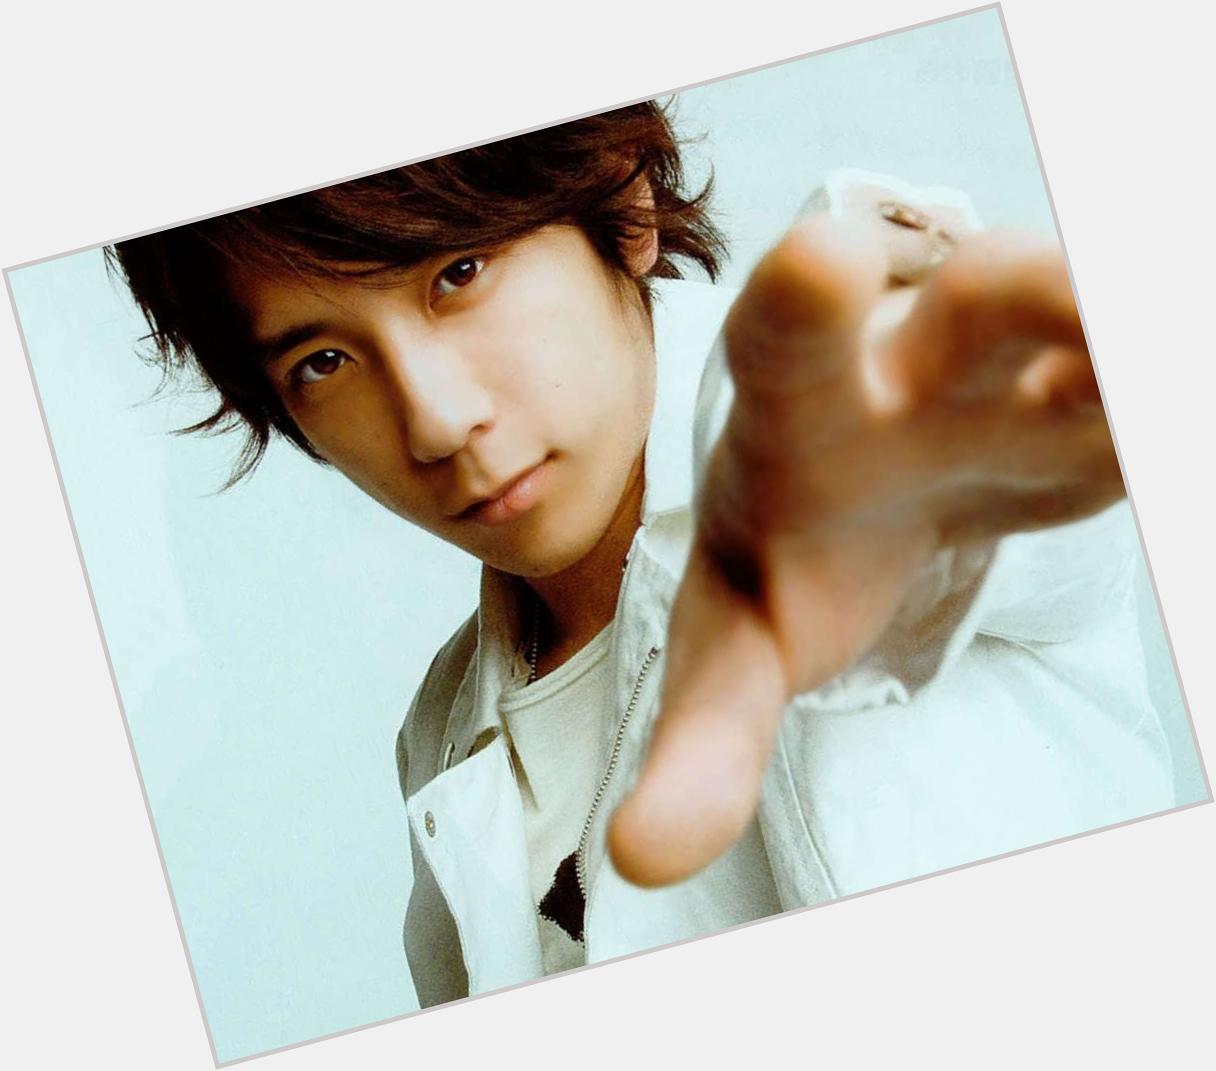 June 17, wish Happy Birthday to Japanese Idol, singer, member of Japanese boyband Arashi, Kazunari Ninomiya. 